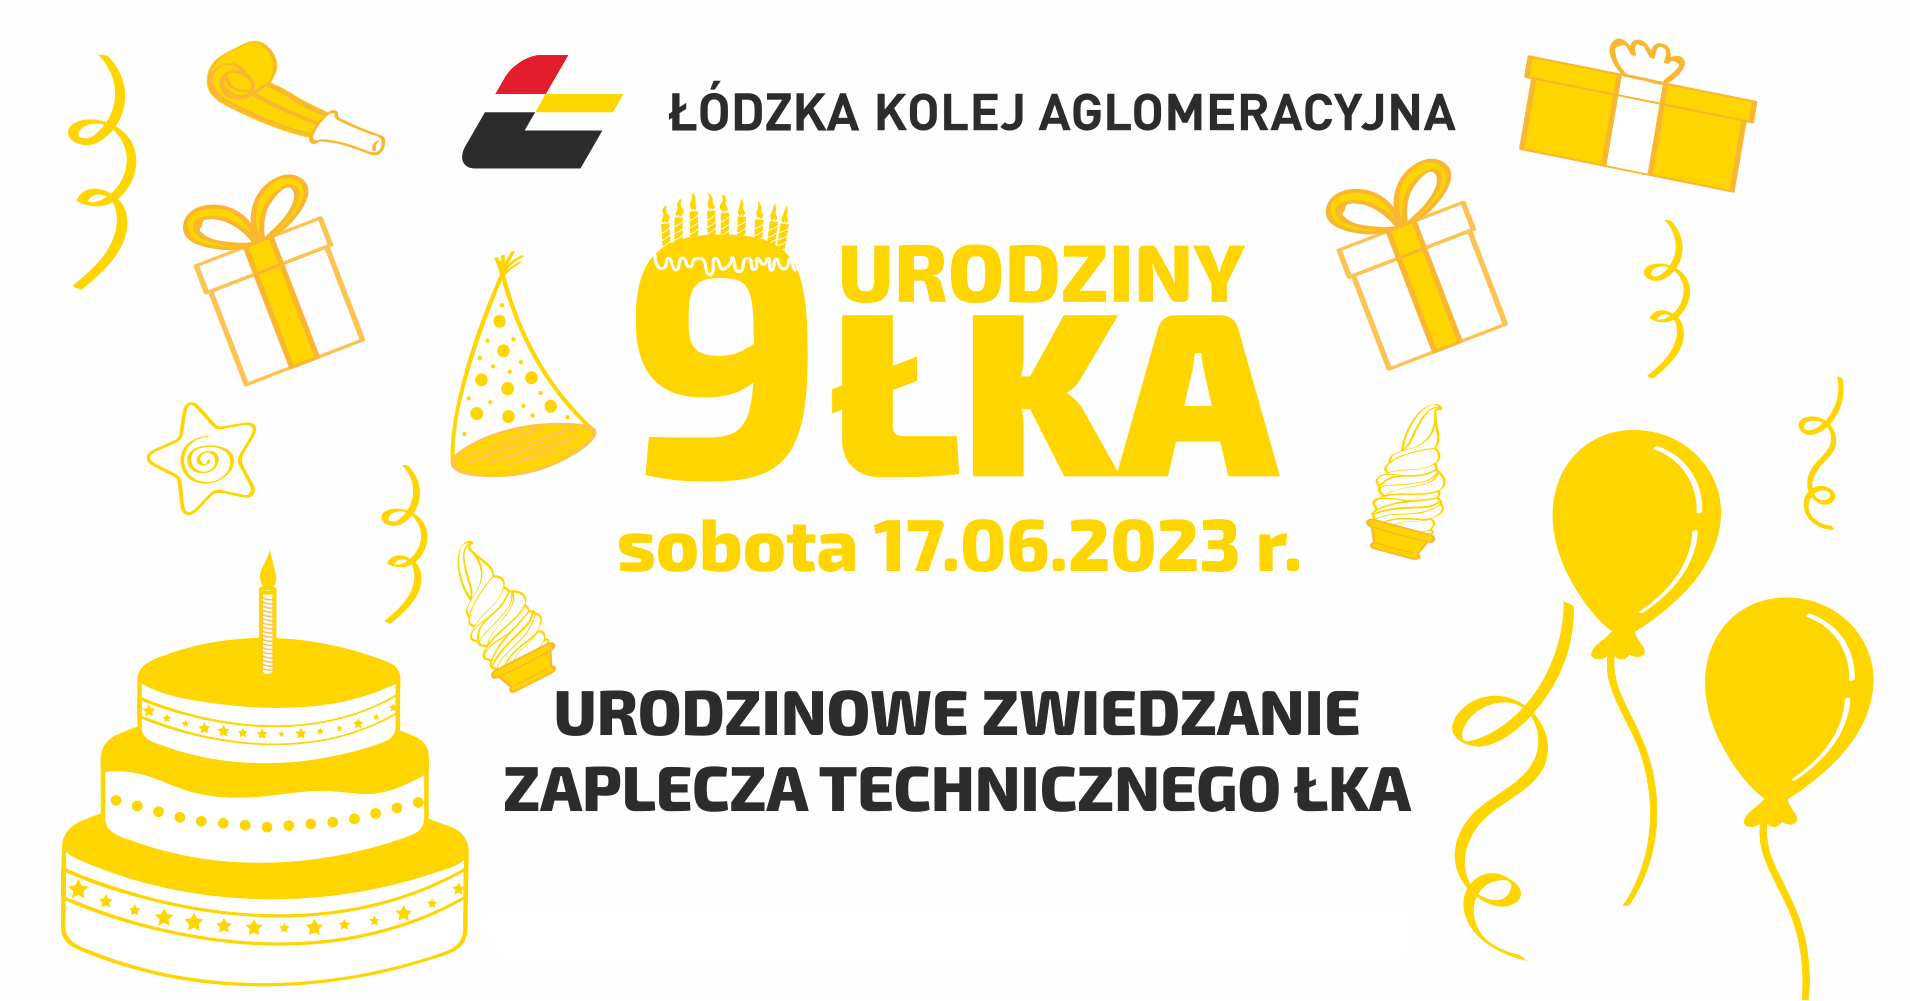 Grafika przedstawia logo ŁKA, rysunkowe balony, prezenty, tort, czapeczki, lody i serpentyny, a także napis :9 urodziny ŁKA, sobota 17.06.2023 r., urodzinowe zwiedzanie zaplecza technicznego. 